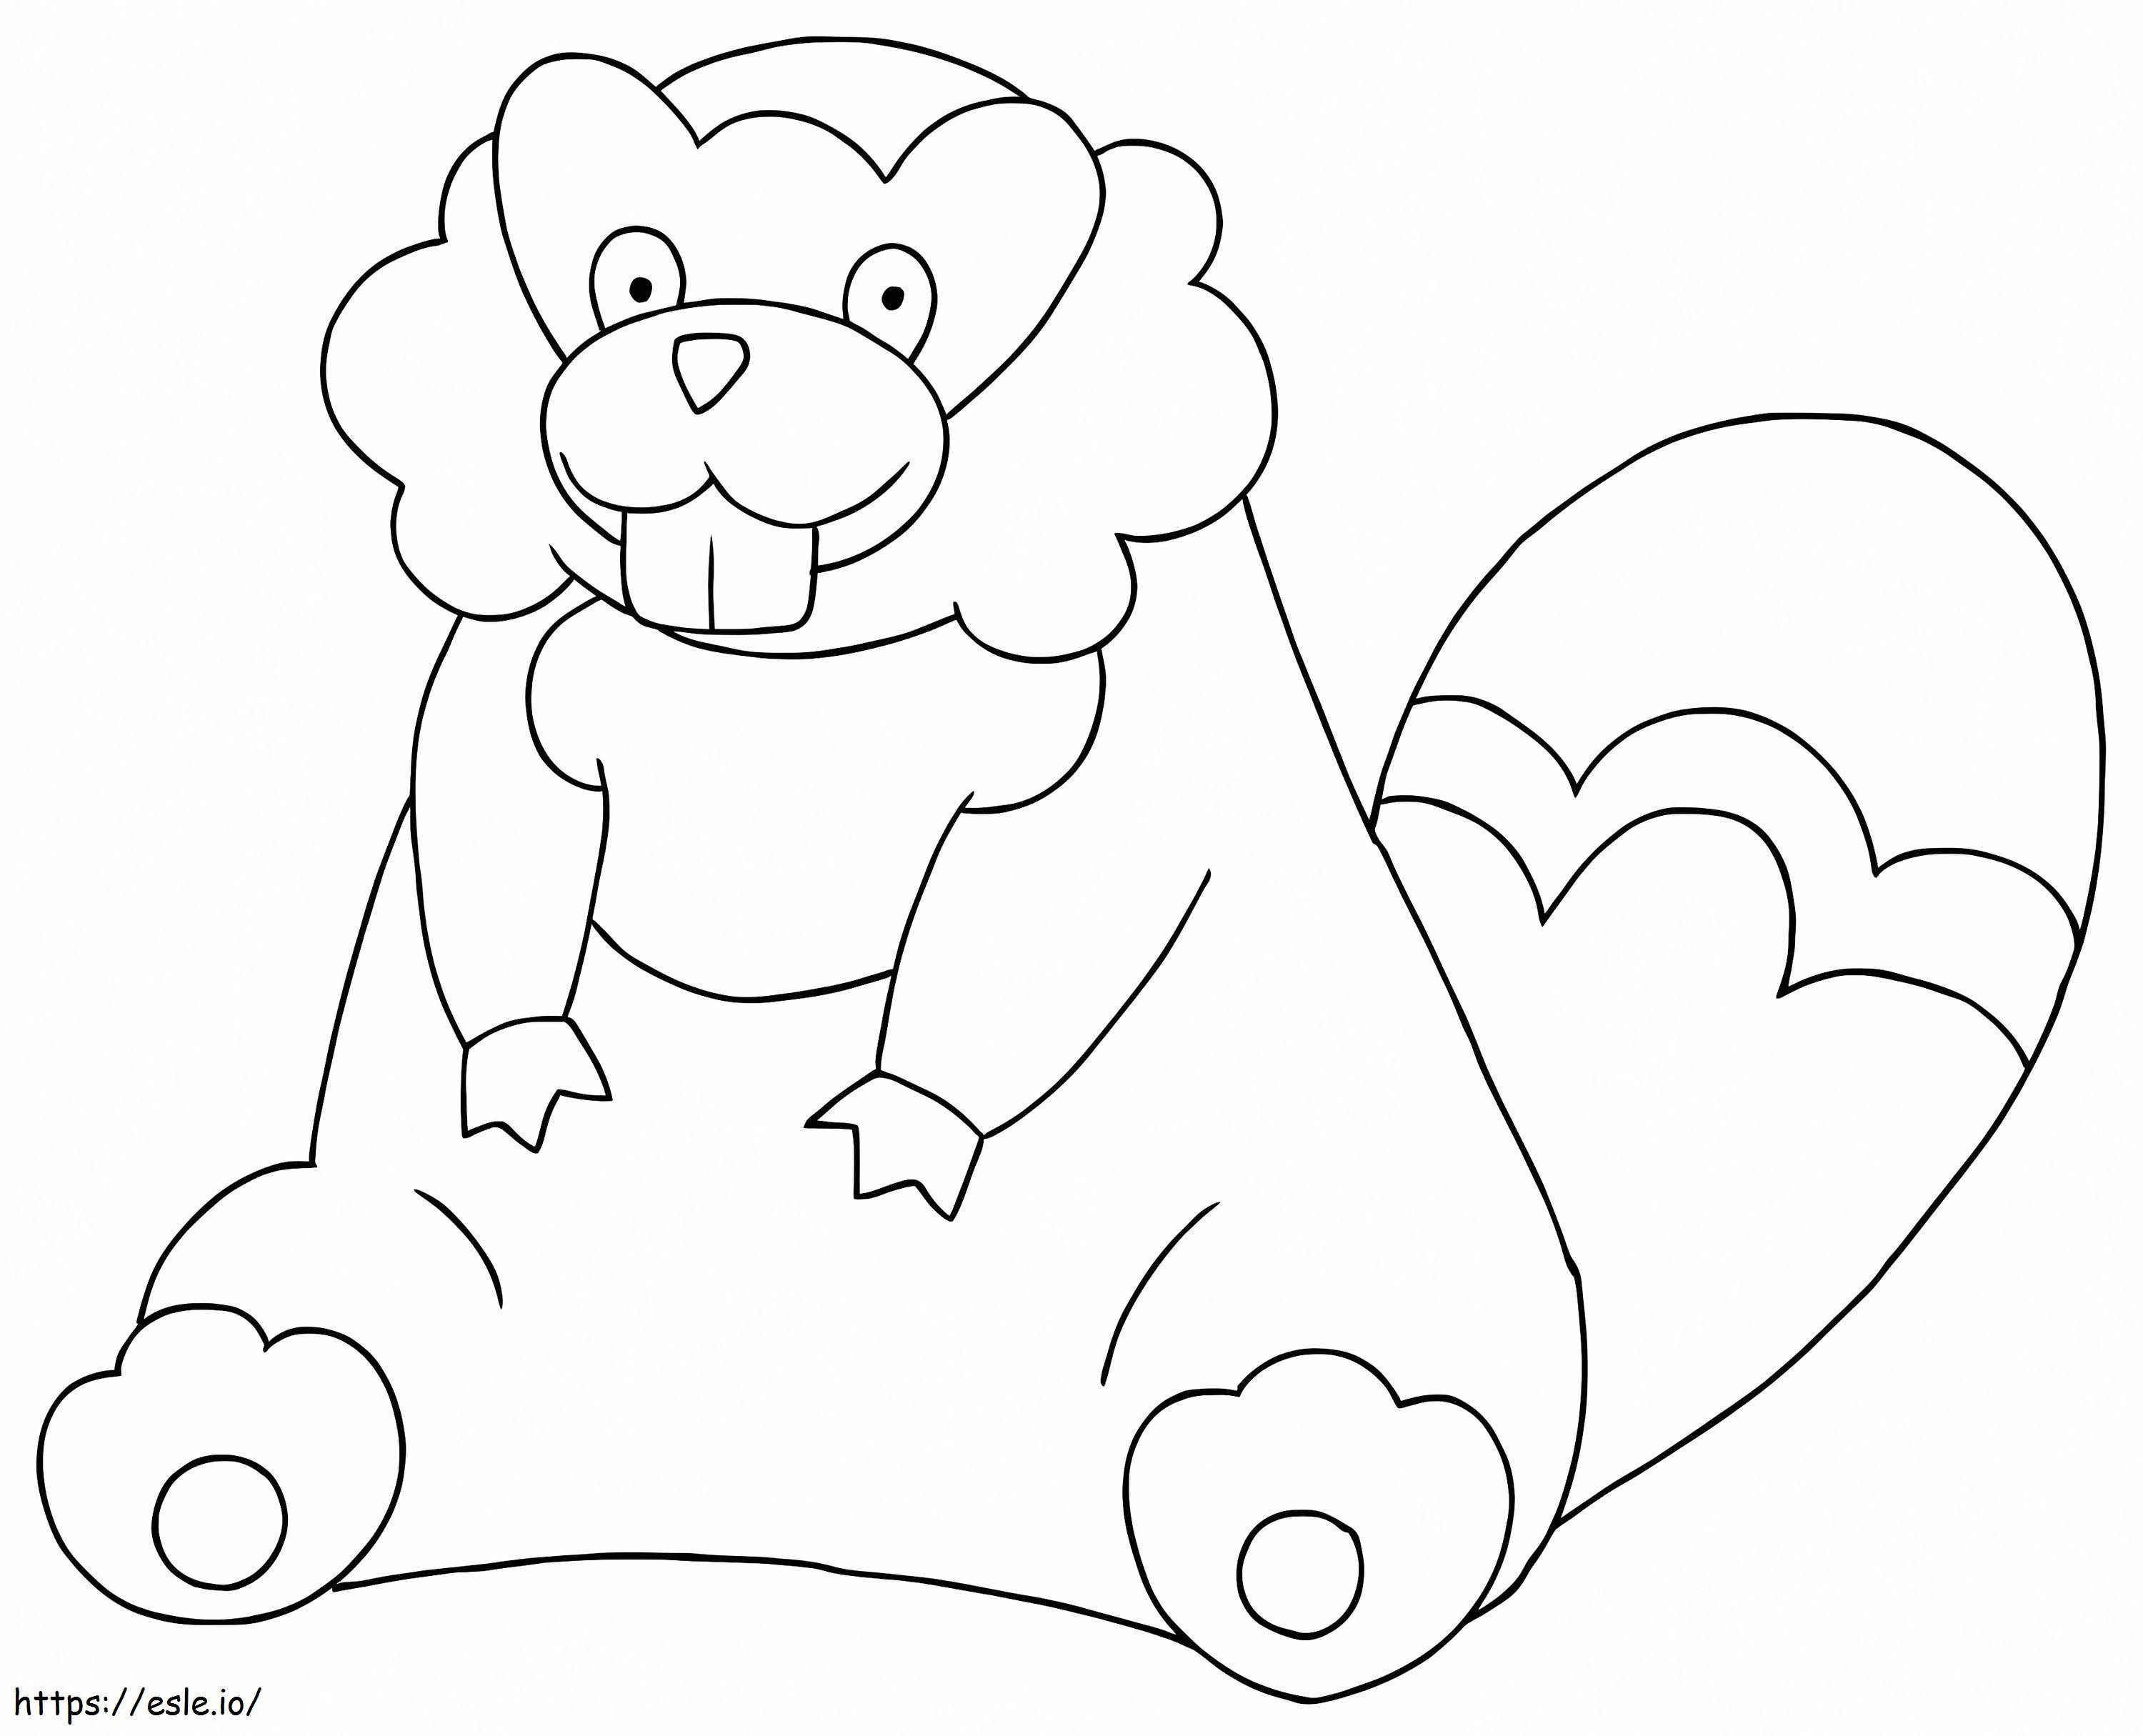 Coloriage Pokémon Bibarel Gen 3 à imprimer dessin